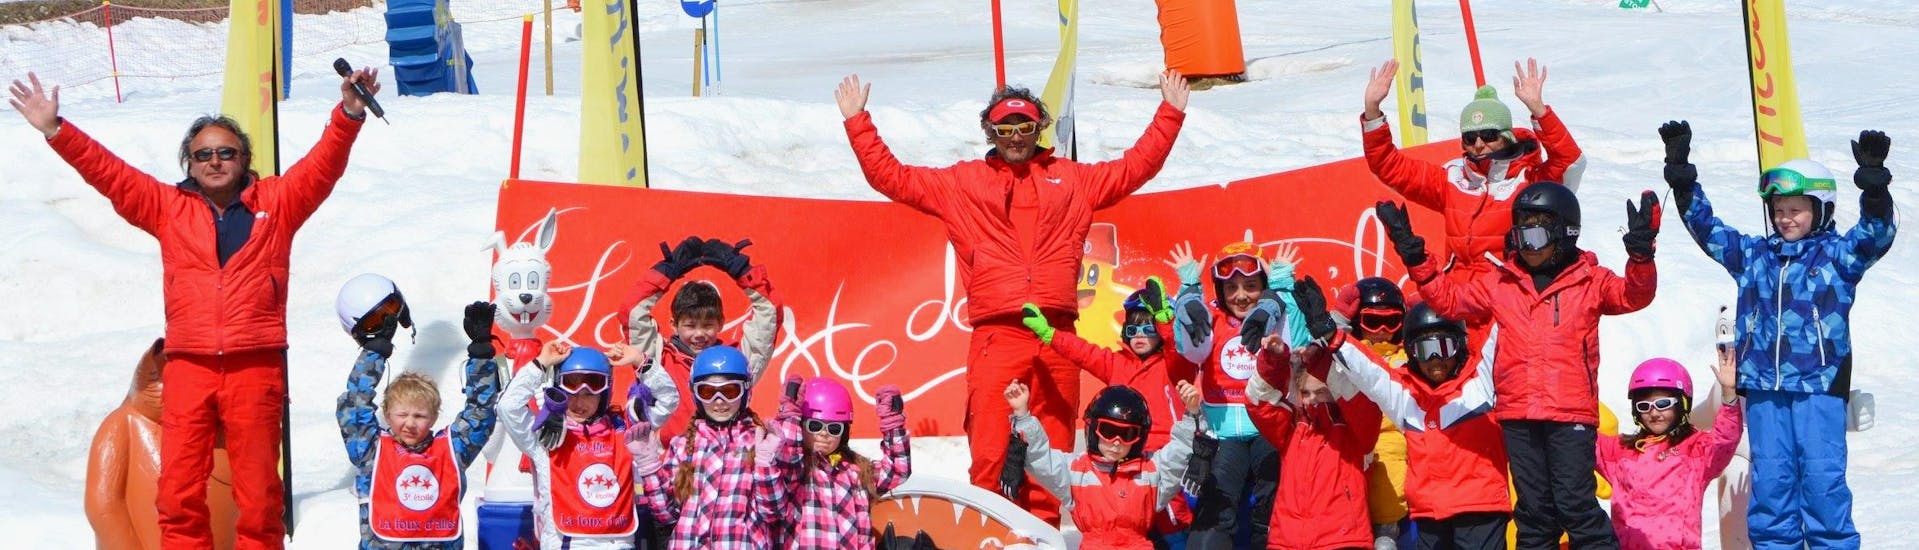 Les enfants prennent une photo de groupe tous ensemble à la fin de leur Cours de ski Enfants (4-12 ans) avec l'école de ski ESF La Foux d'Allos.